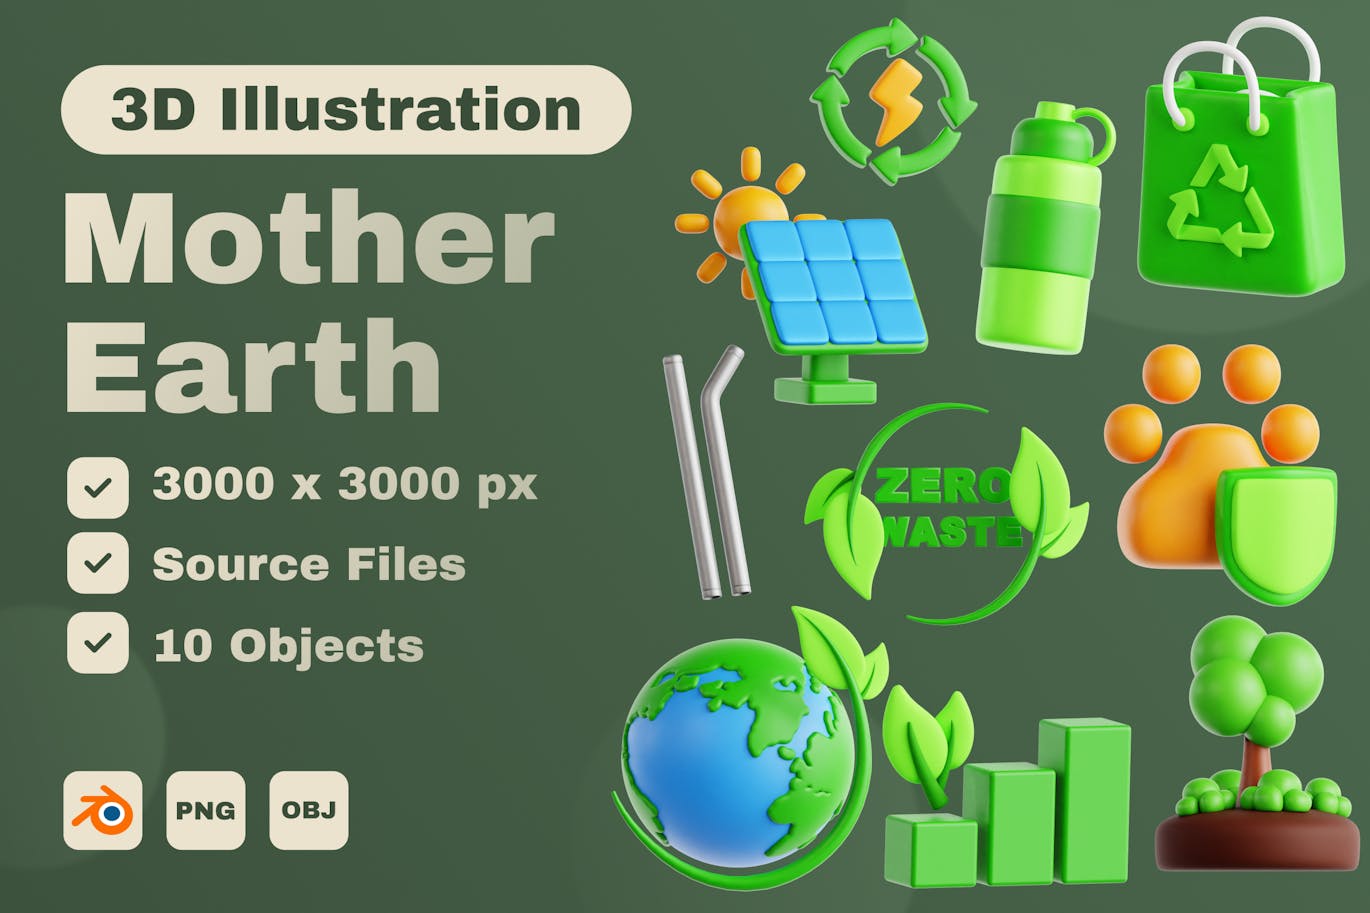 地球母亲 3D 图标集 (PNG,OBJ.BLEND)